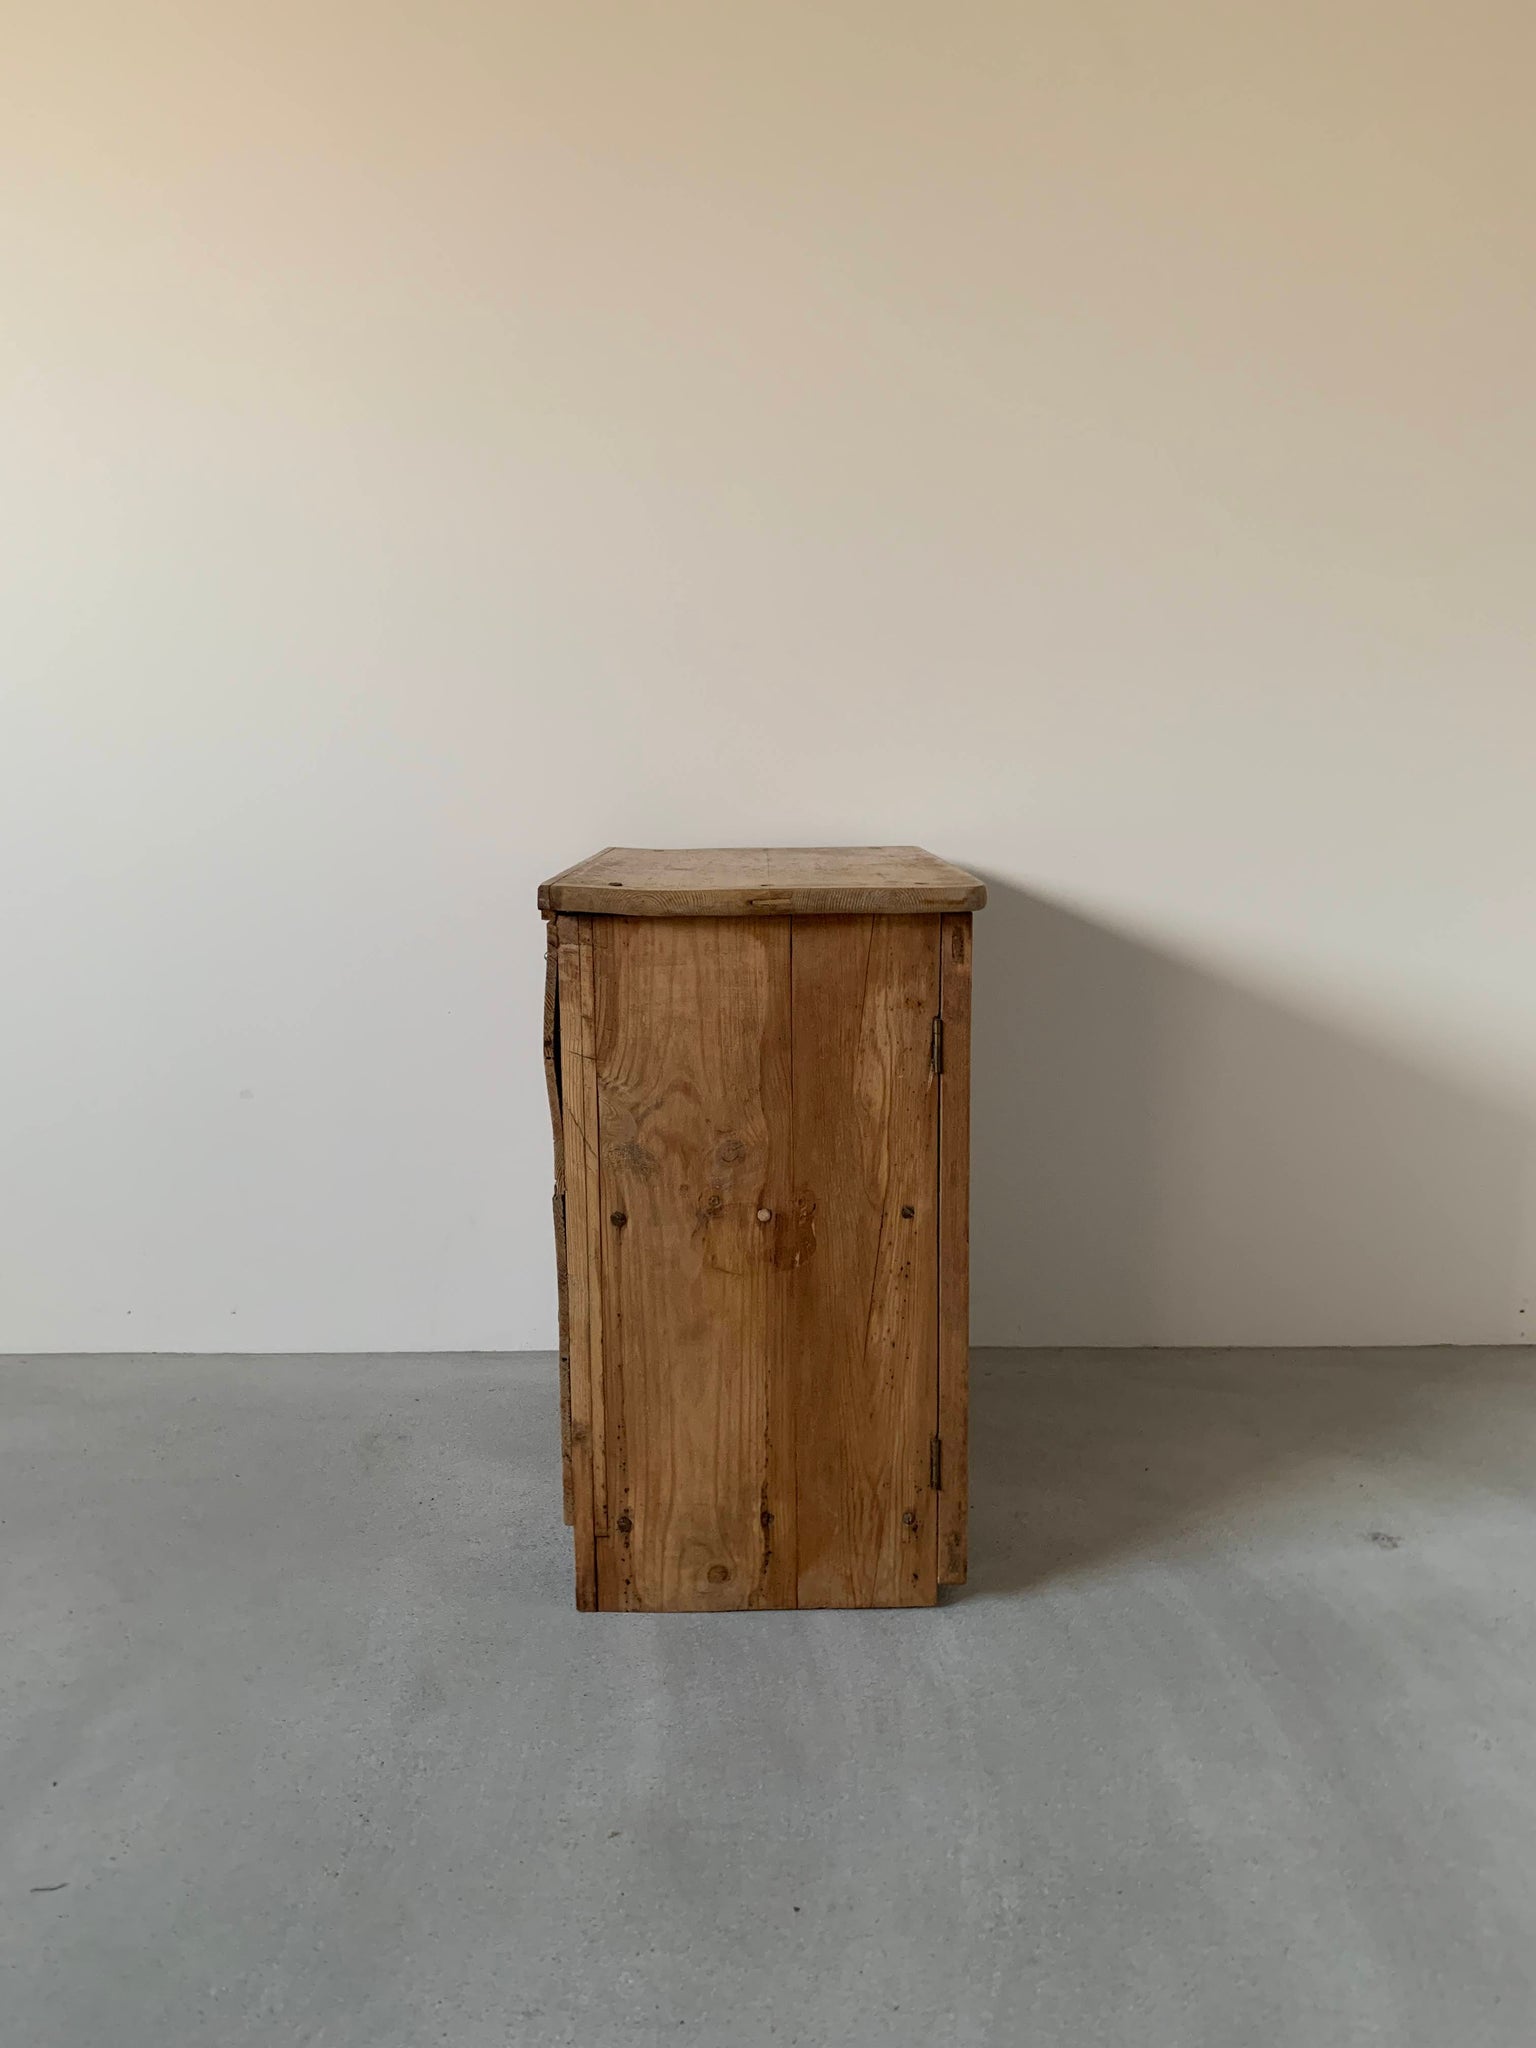 スモール パイン カップボード / small pine cupboard #0222